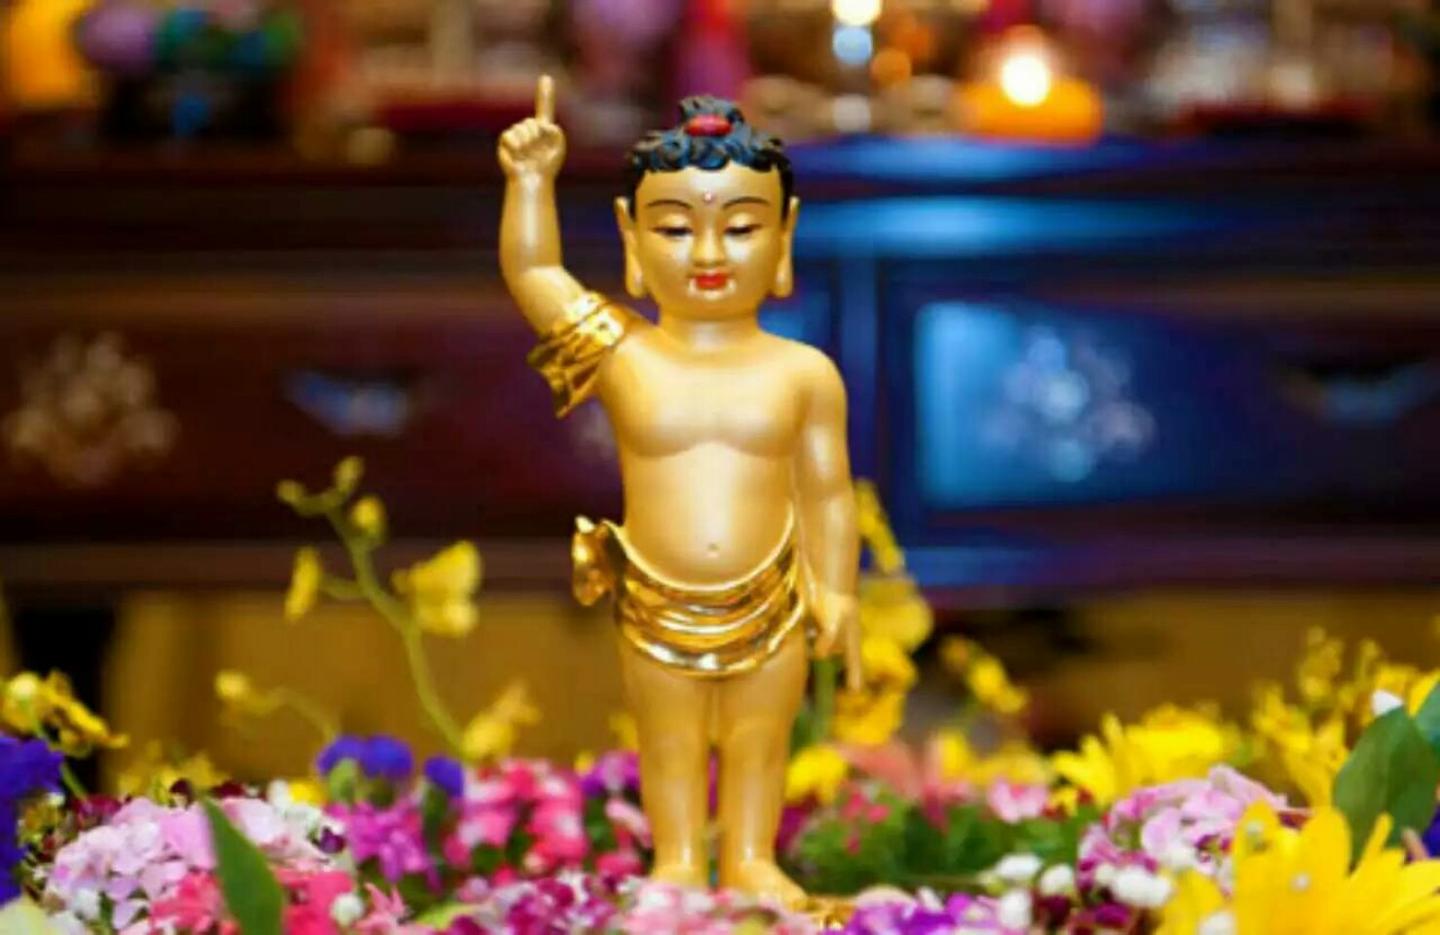 首发于 随喜赞叹 #佛教常识# #学佛善文化#释迦牟尼,是我们这个娑婆